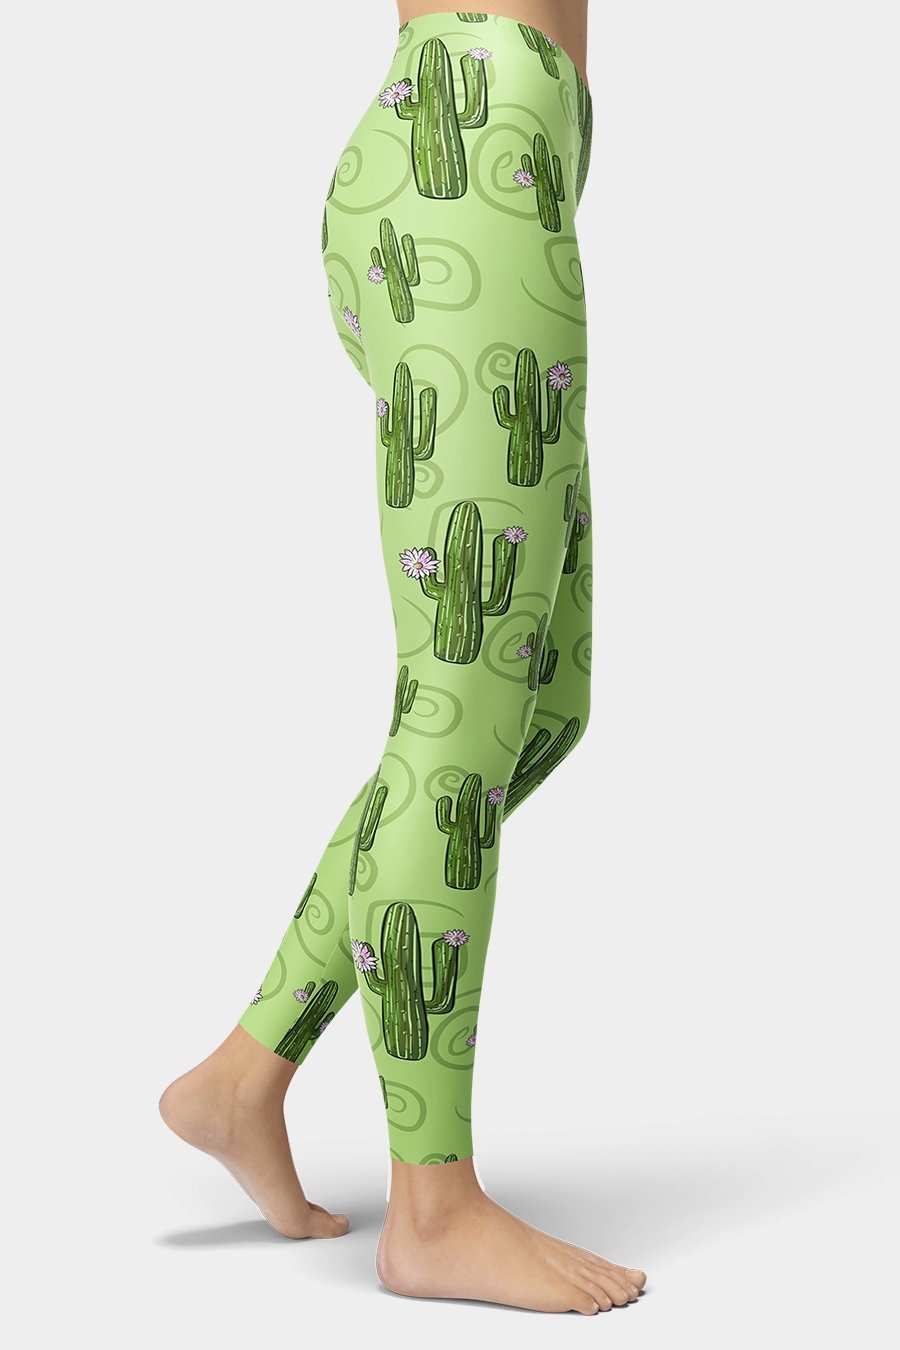 Green Cactus Printed Leggings - SeeMyLeggings